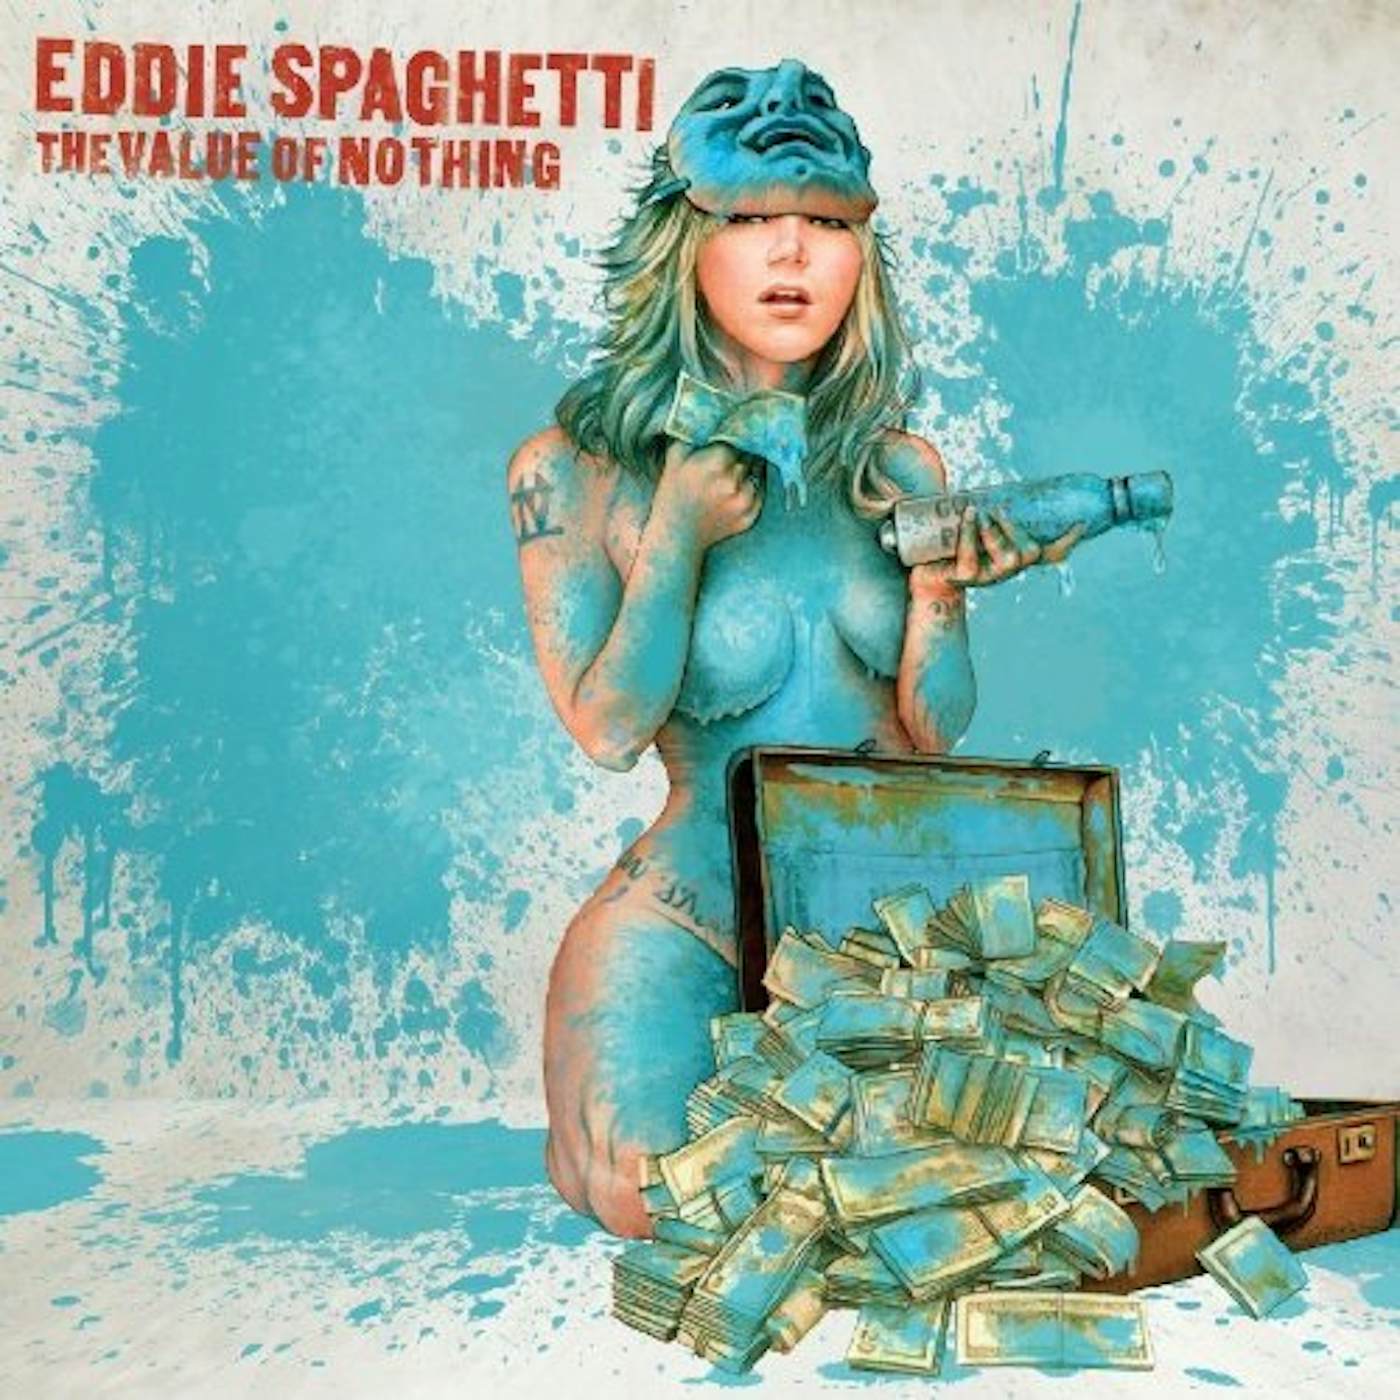 Eddie Spaghetti VALUE OF NOTHING Vinyl Record